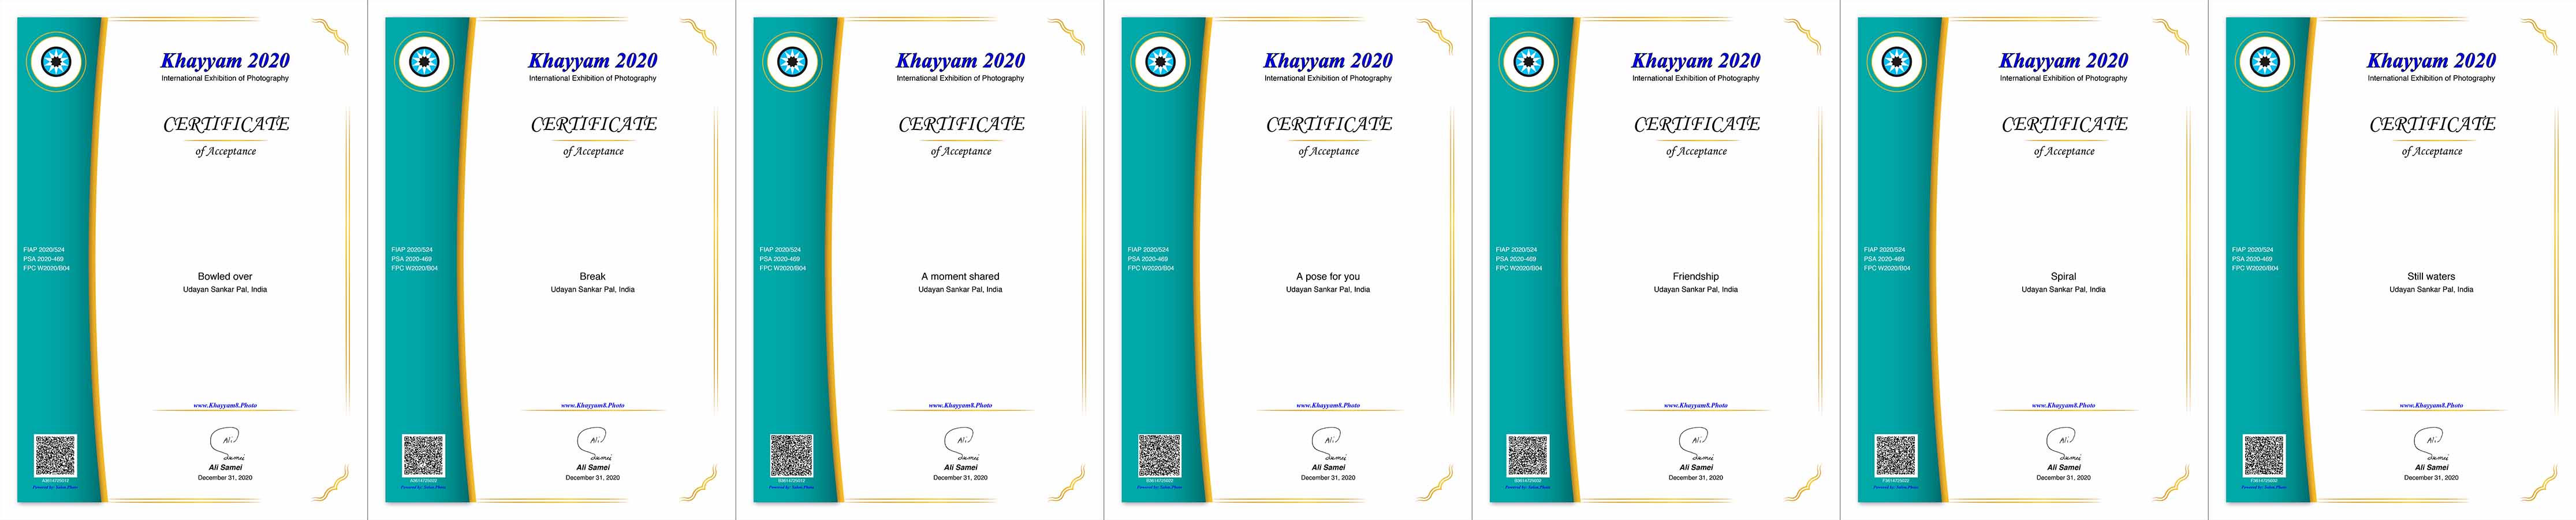 Khayyam-2020